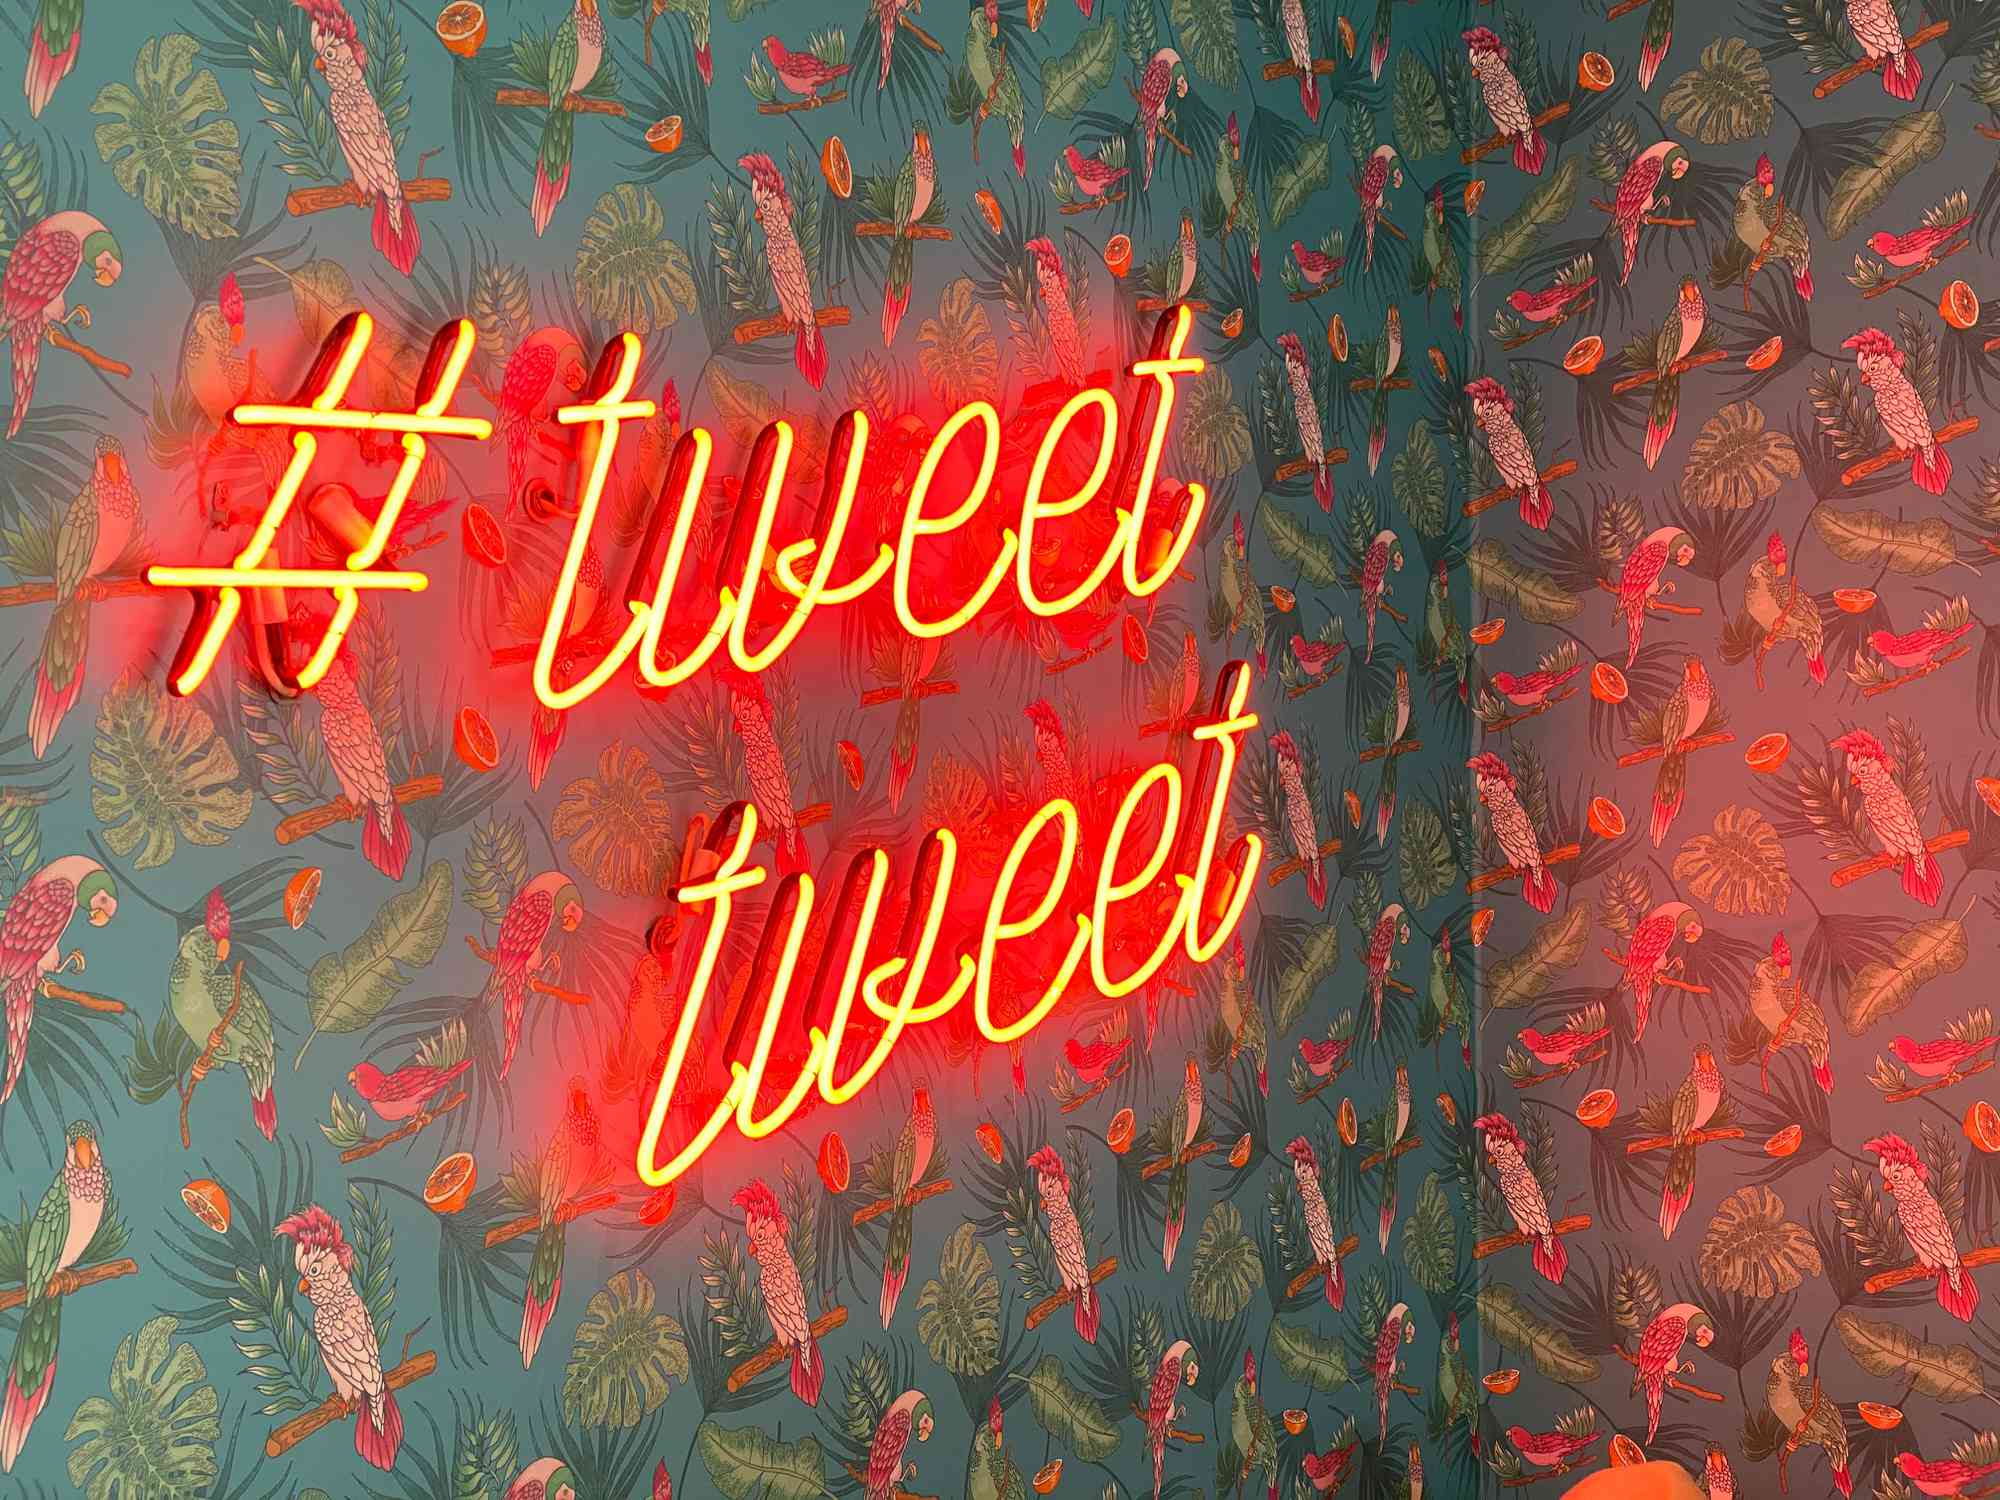 Neonový nápis s nápisem #tweettweet proti zdi pokryté tapetami s motivem papoušků a džungle.